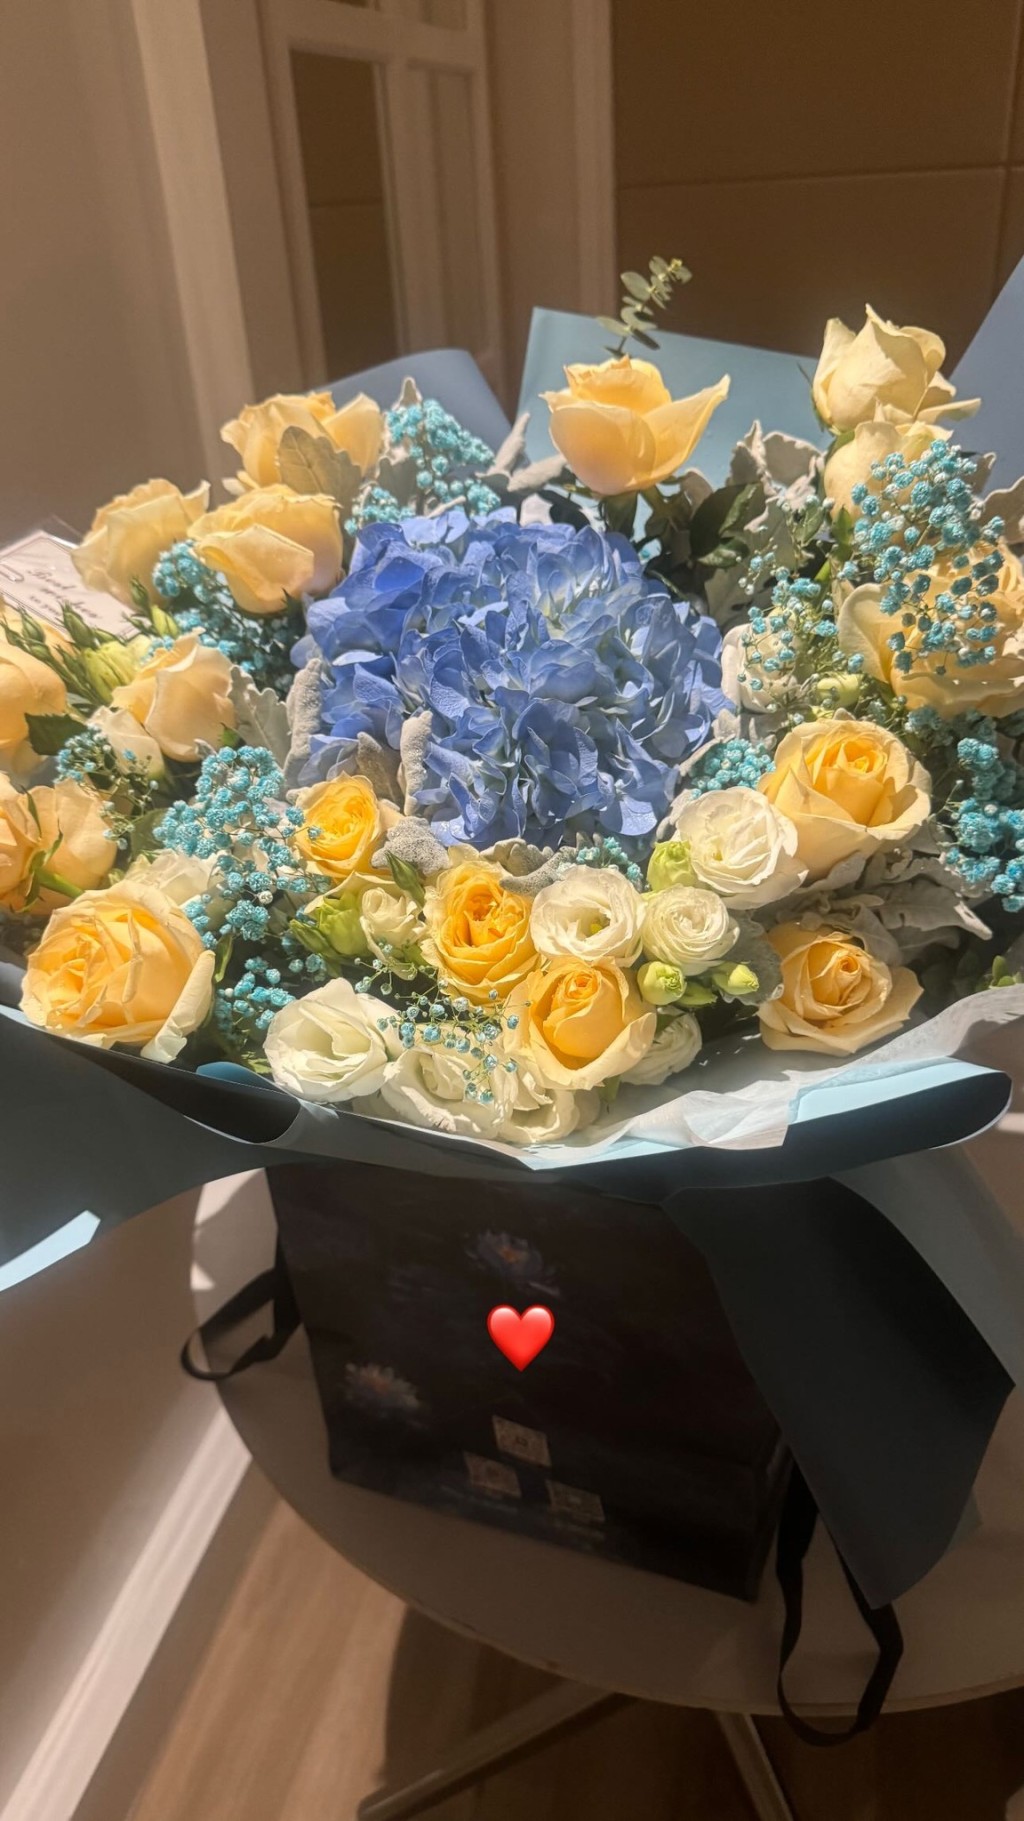 高钧贤今日凌晨已在IG限时动态贴出花束加上一个心心emoji，再贴出生日蛋糕放闪。